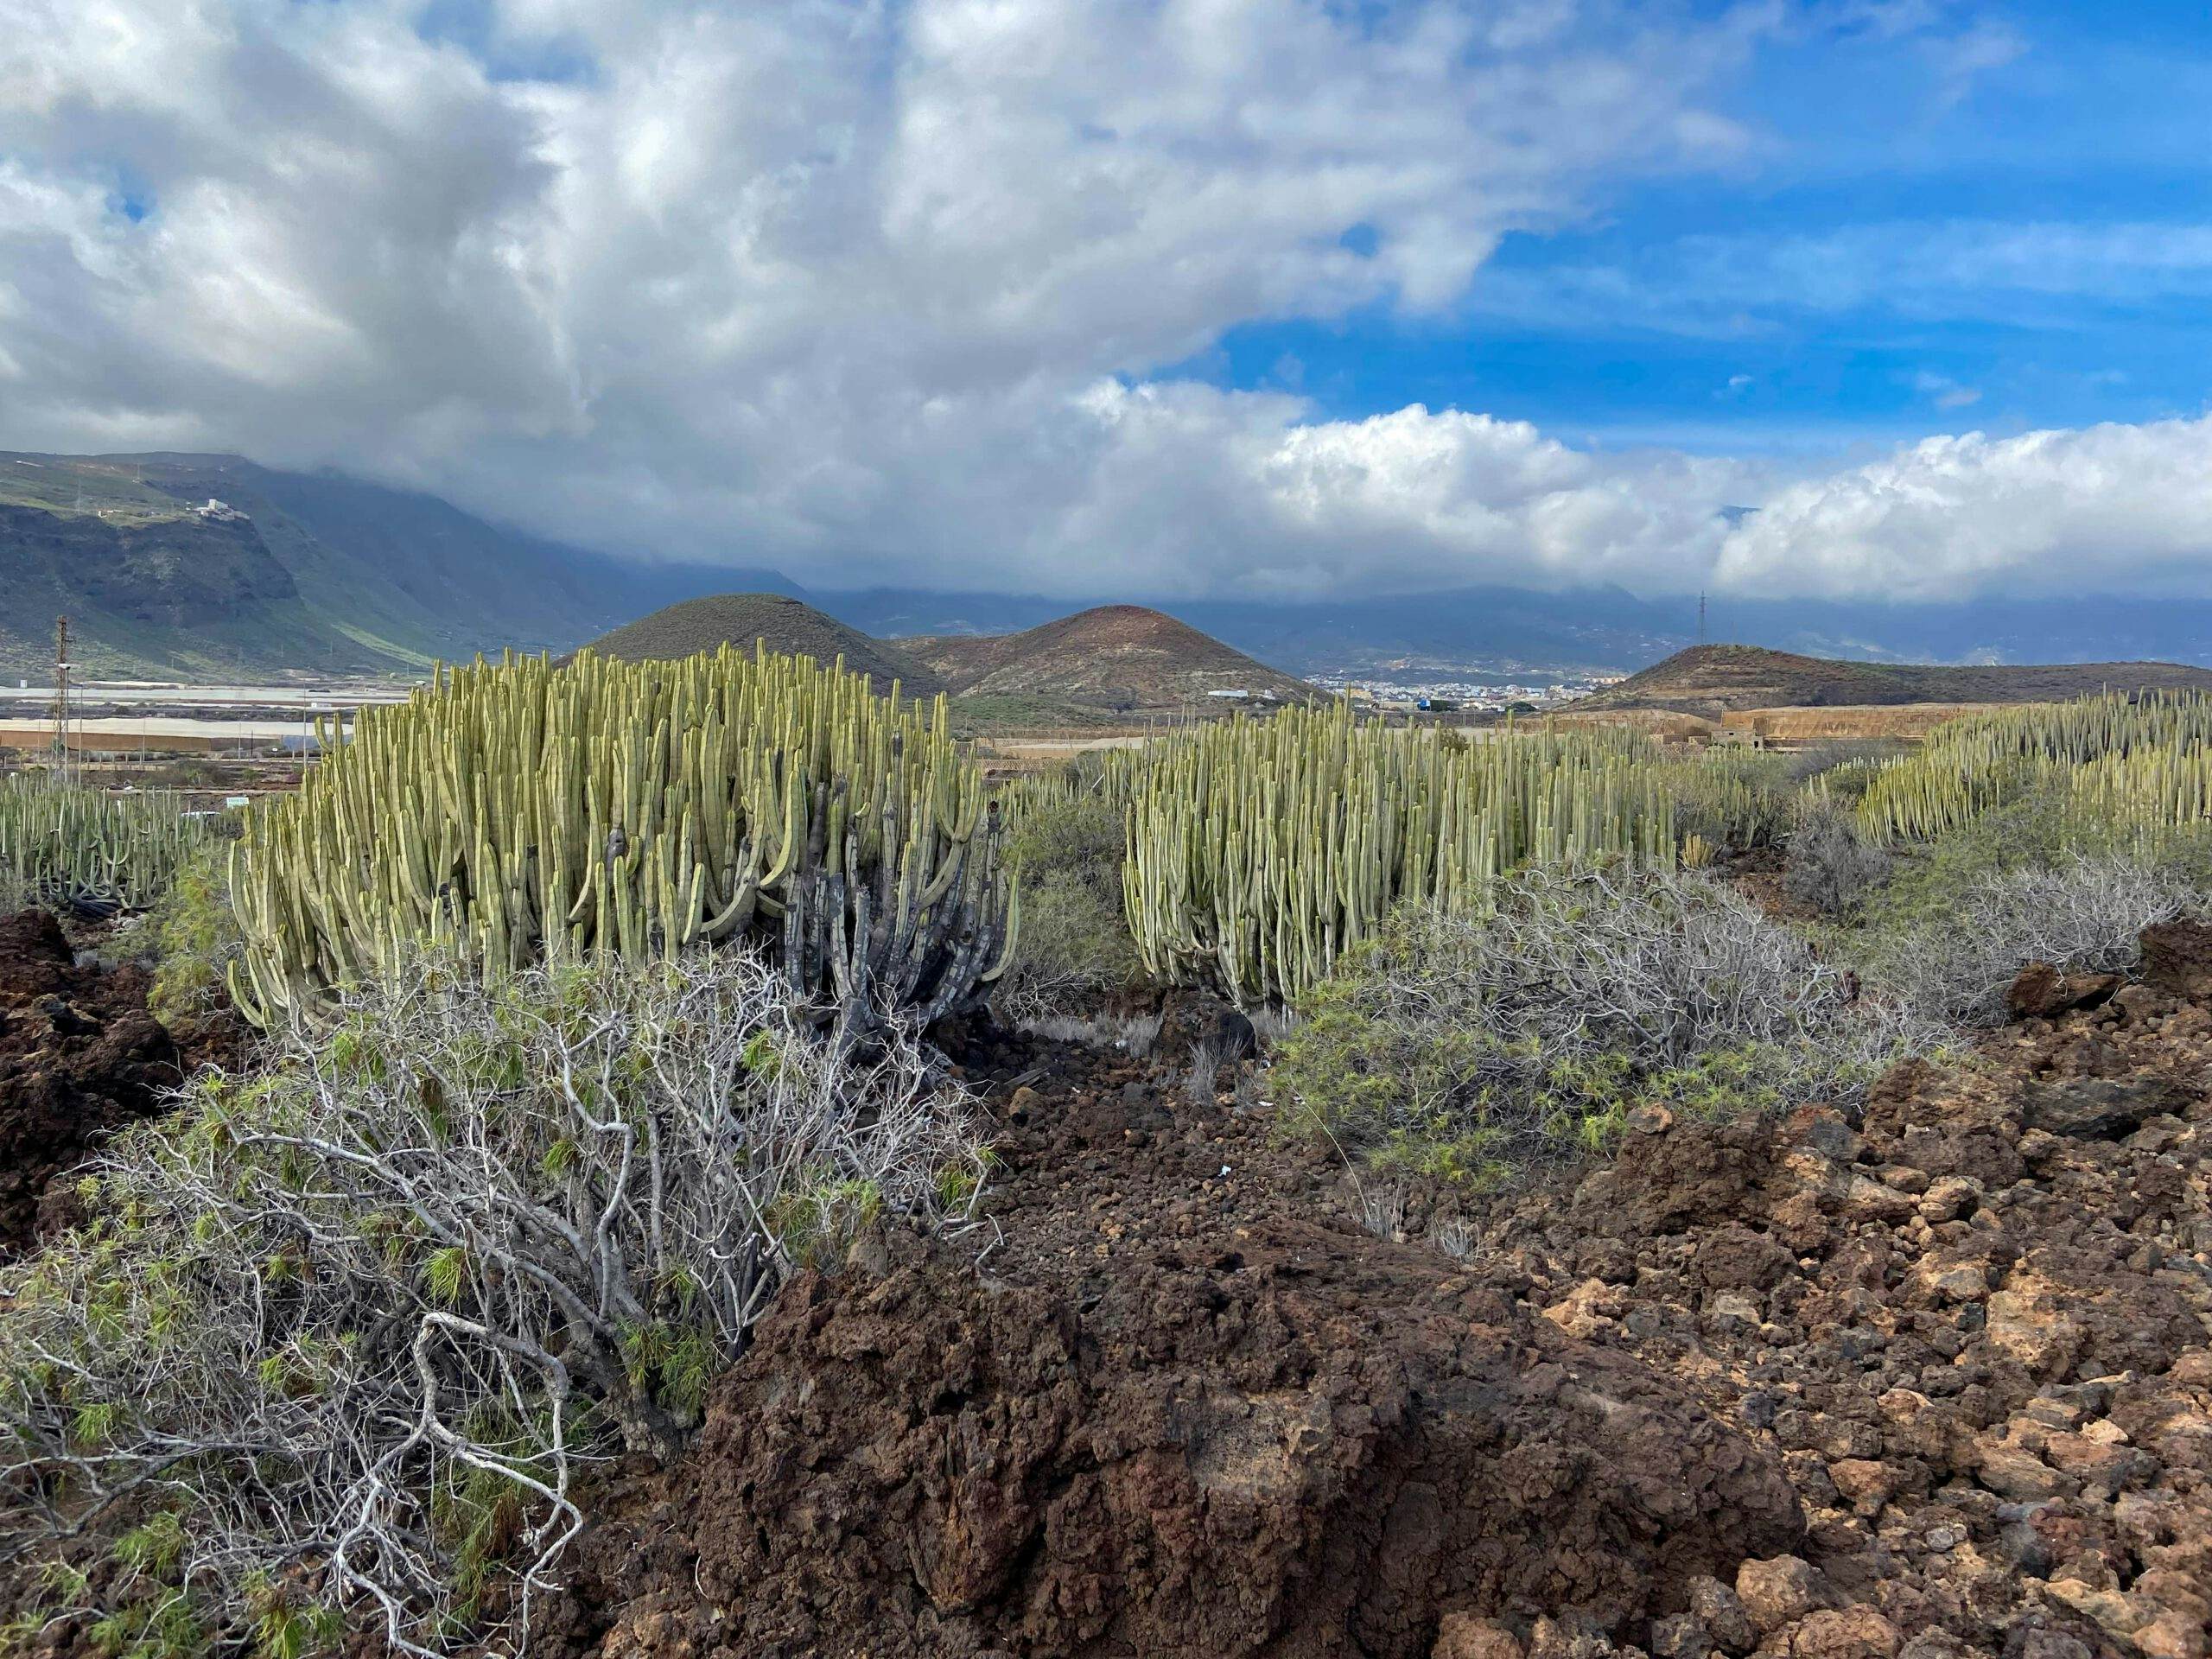 Caminos entre cactus, mucha vegetación y piedras volcánicas